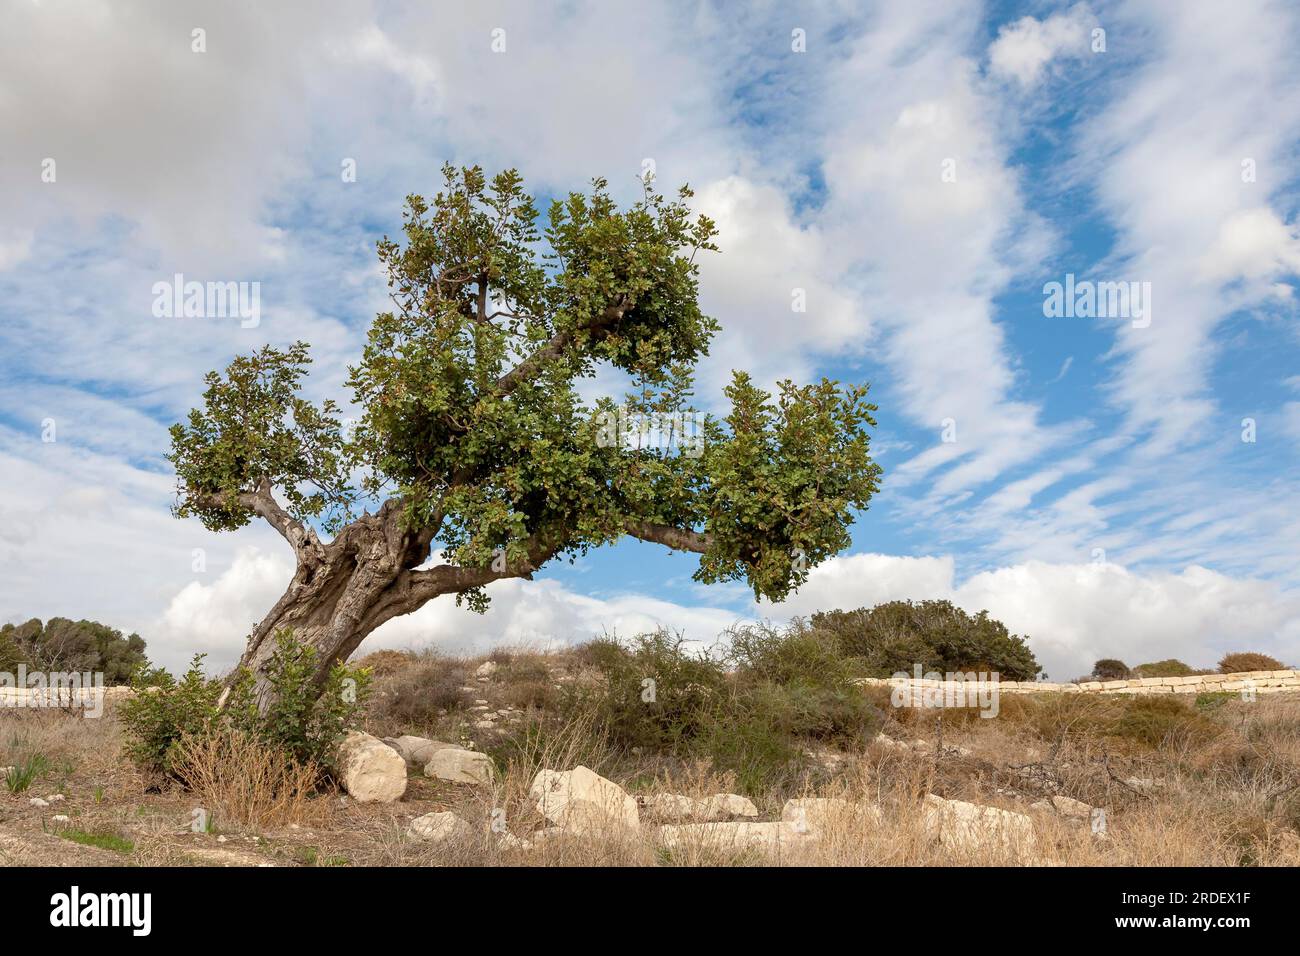 Holm oak (Quercus ilex) Stock Photo